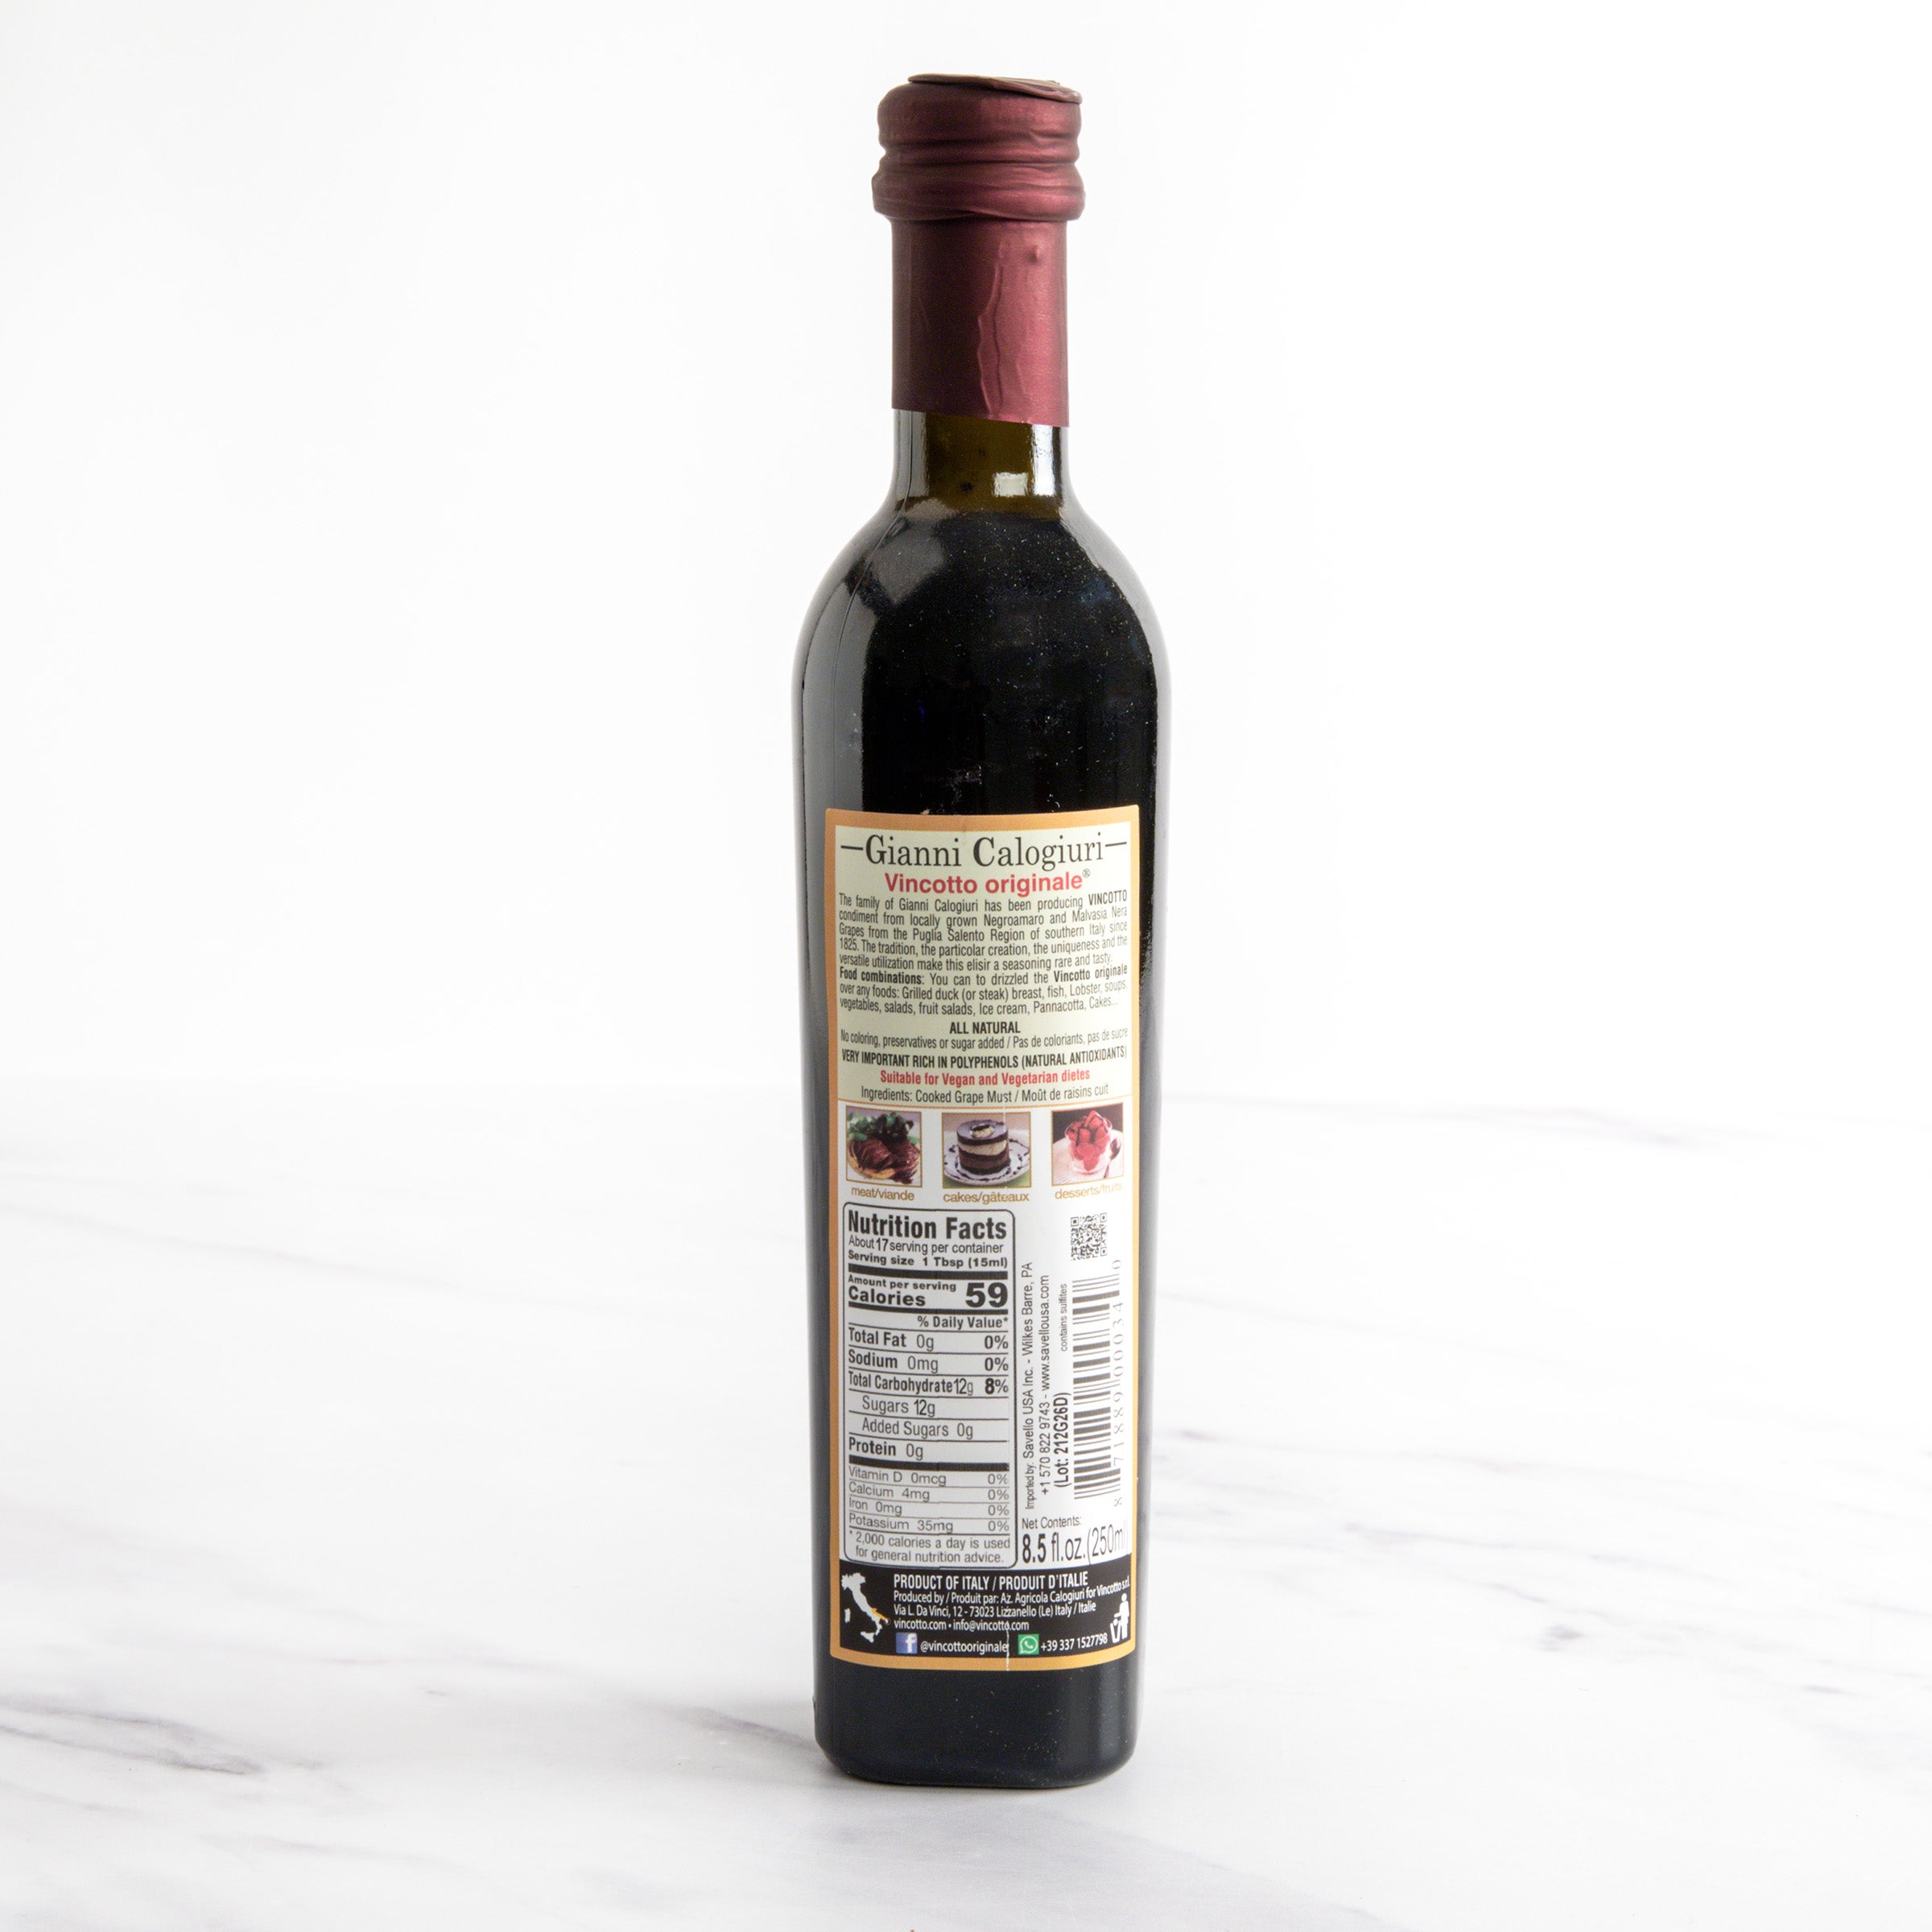 Vincotto - Gianni Calogiuri - Italian Balsamic Vinegar